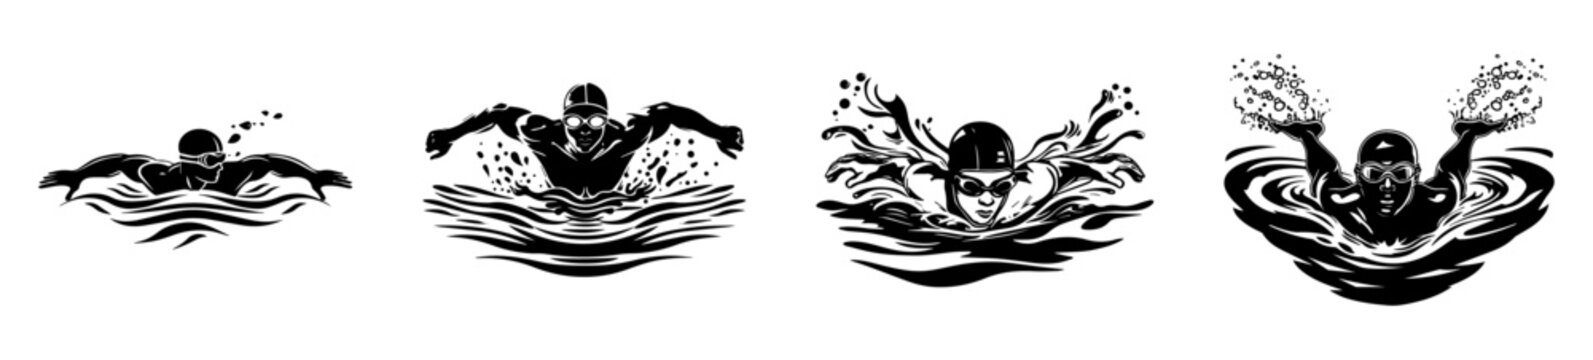 swimming man collection logos